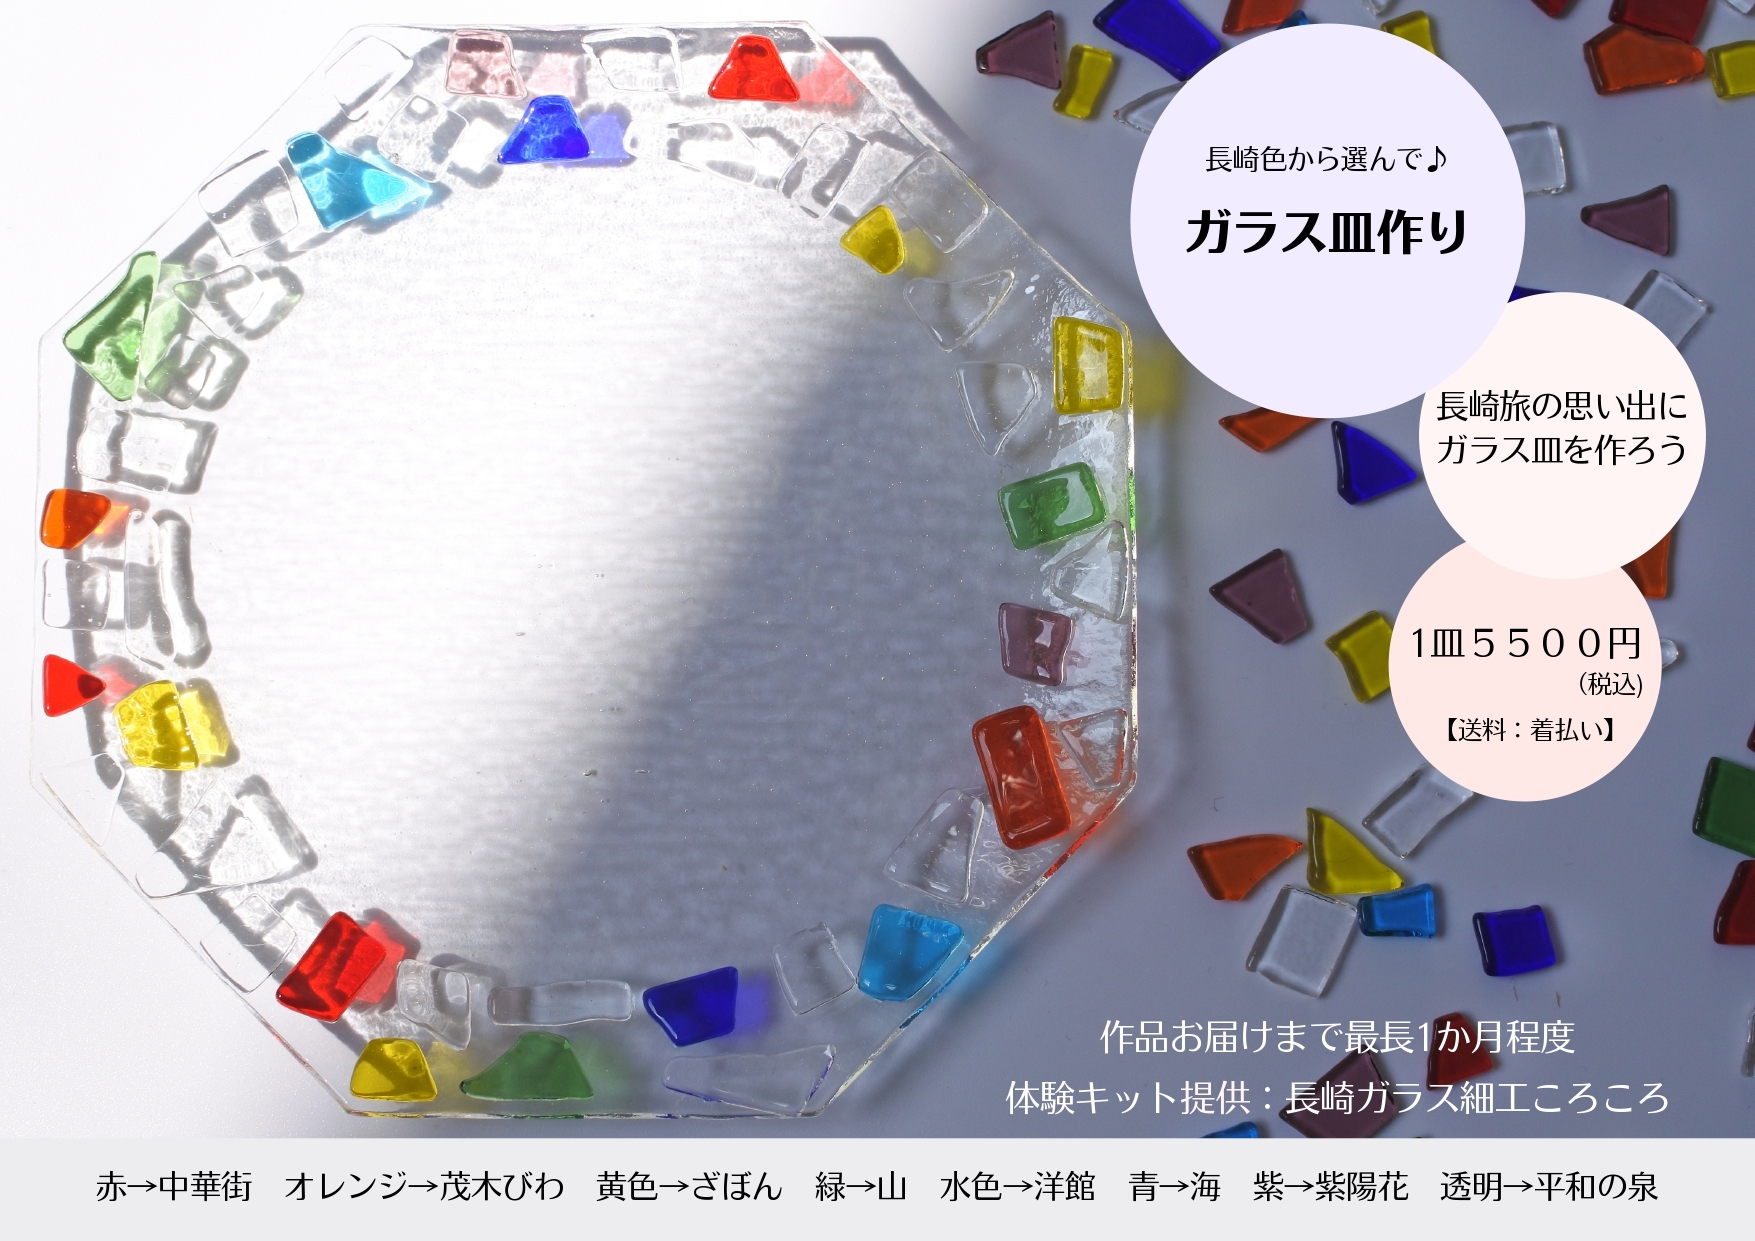 長崎県「ROYAL CHESTER NAGASAKI hotel&retreat」で
ガラス皿作り＆風鈴絵付けが体験ができるイベントを
7月16日(火)～8月31日(土)開催